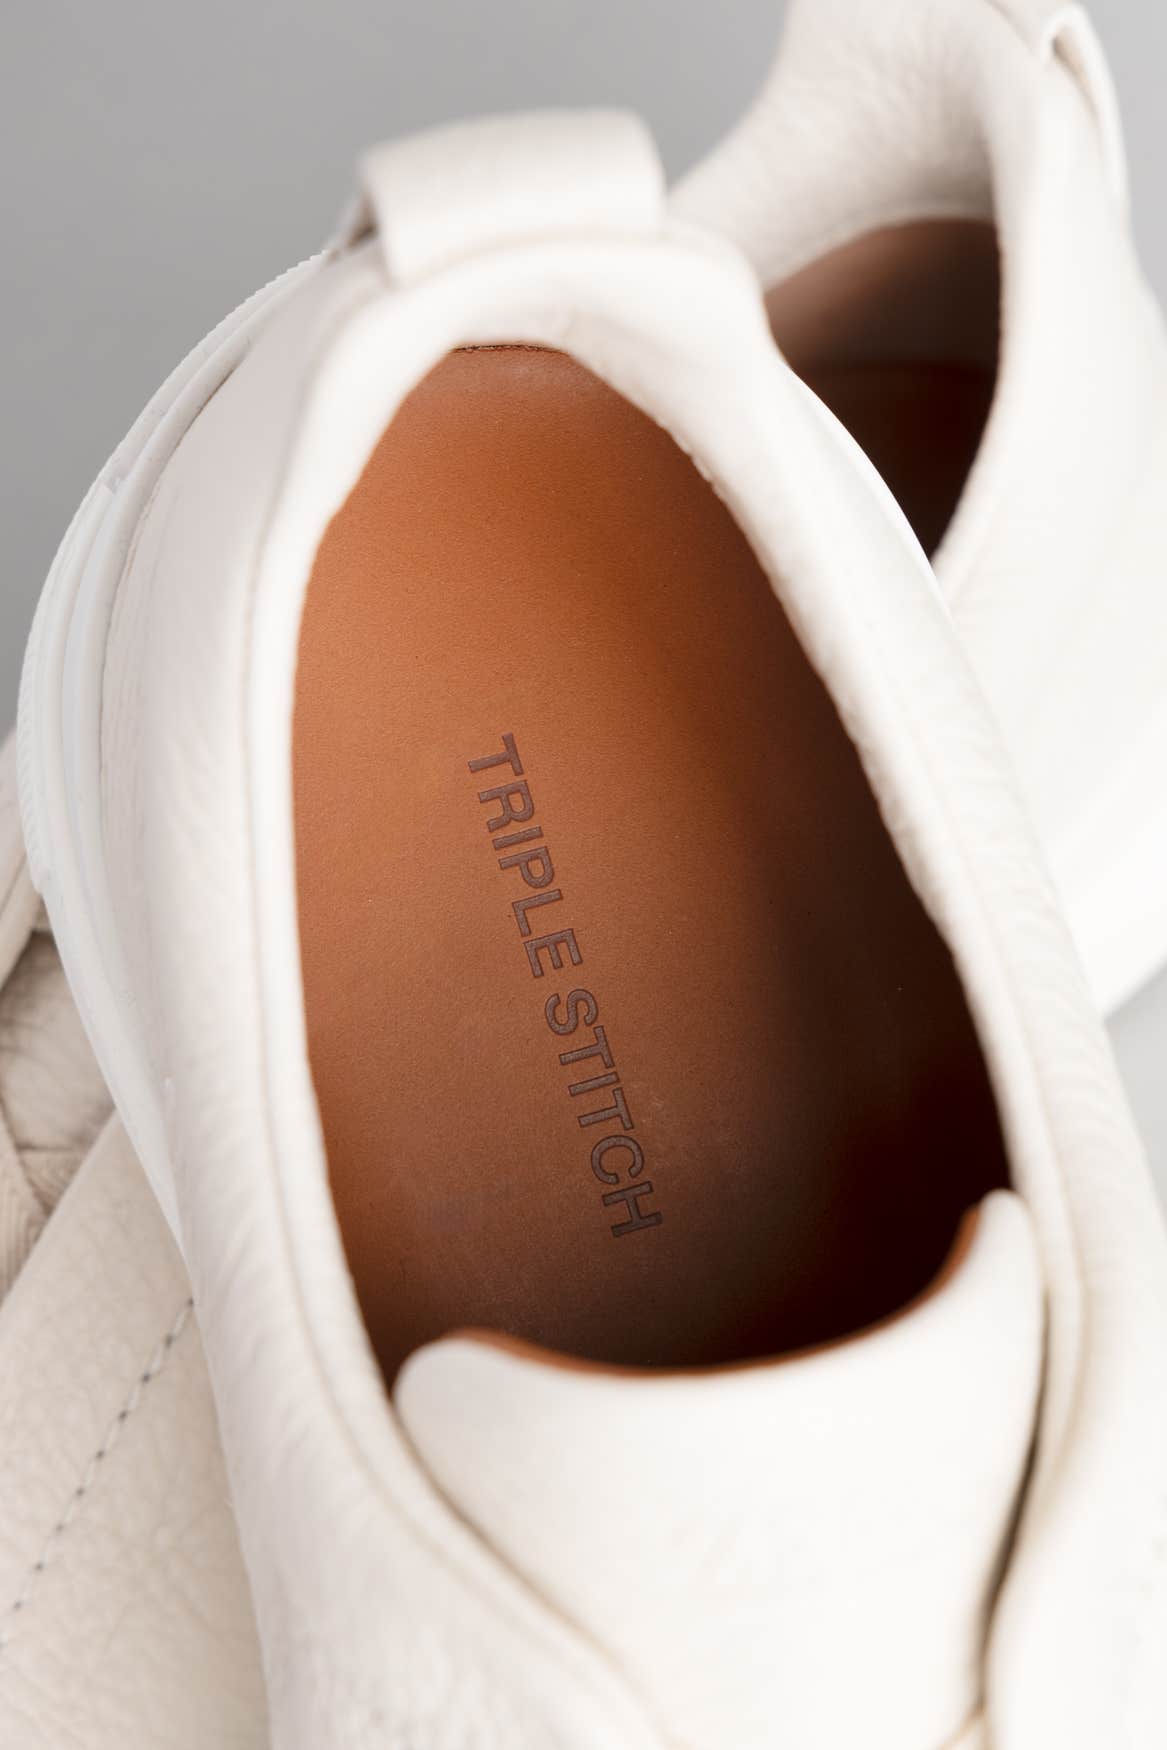 White Deerskin Triple Stitch™ Sneakers